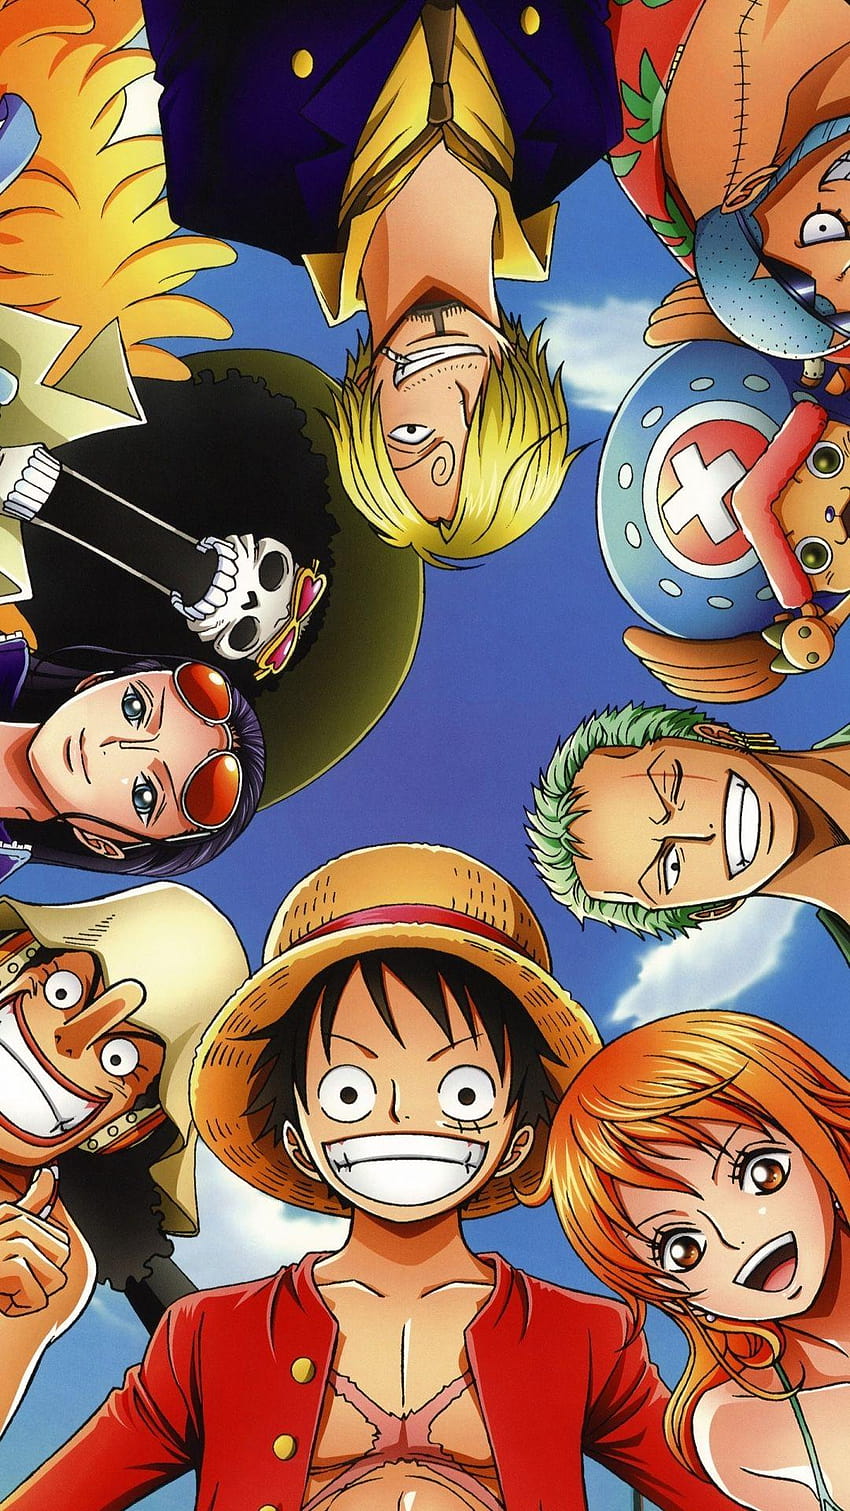 Hình nền One Piece cho iPhone là một trong những thương hiệu nổi tiếng nhất trên thế giới với những đặc trưng đồ họa tuyệt vời và hấp dẫn. Hãy tận hưởng những hình nền đầy màu sắc và phong phú của One Piece trên điện thoại iPhone của bạn và thưởng thức những giây phút thư giãn trọn vẹn.